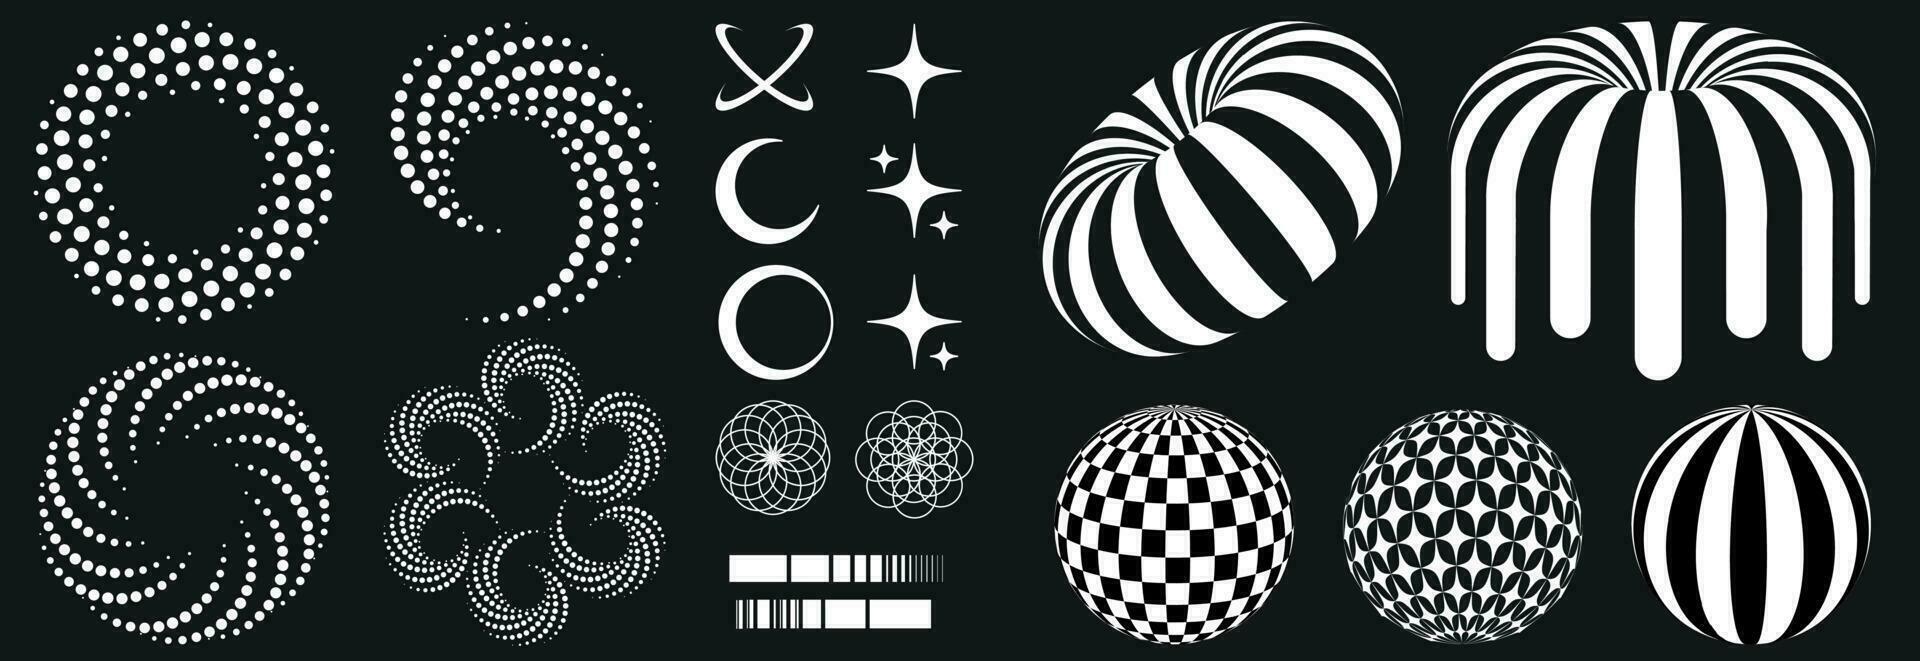 uppsättning i retro psychedelic stil av de 2000-talet med element och geometrisk former mönster, zembra munk. overkligt cirklar, stjärnor, bollar. vektor